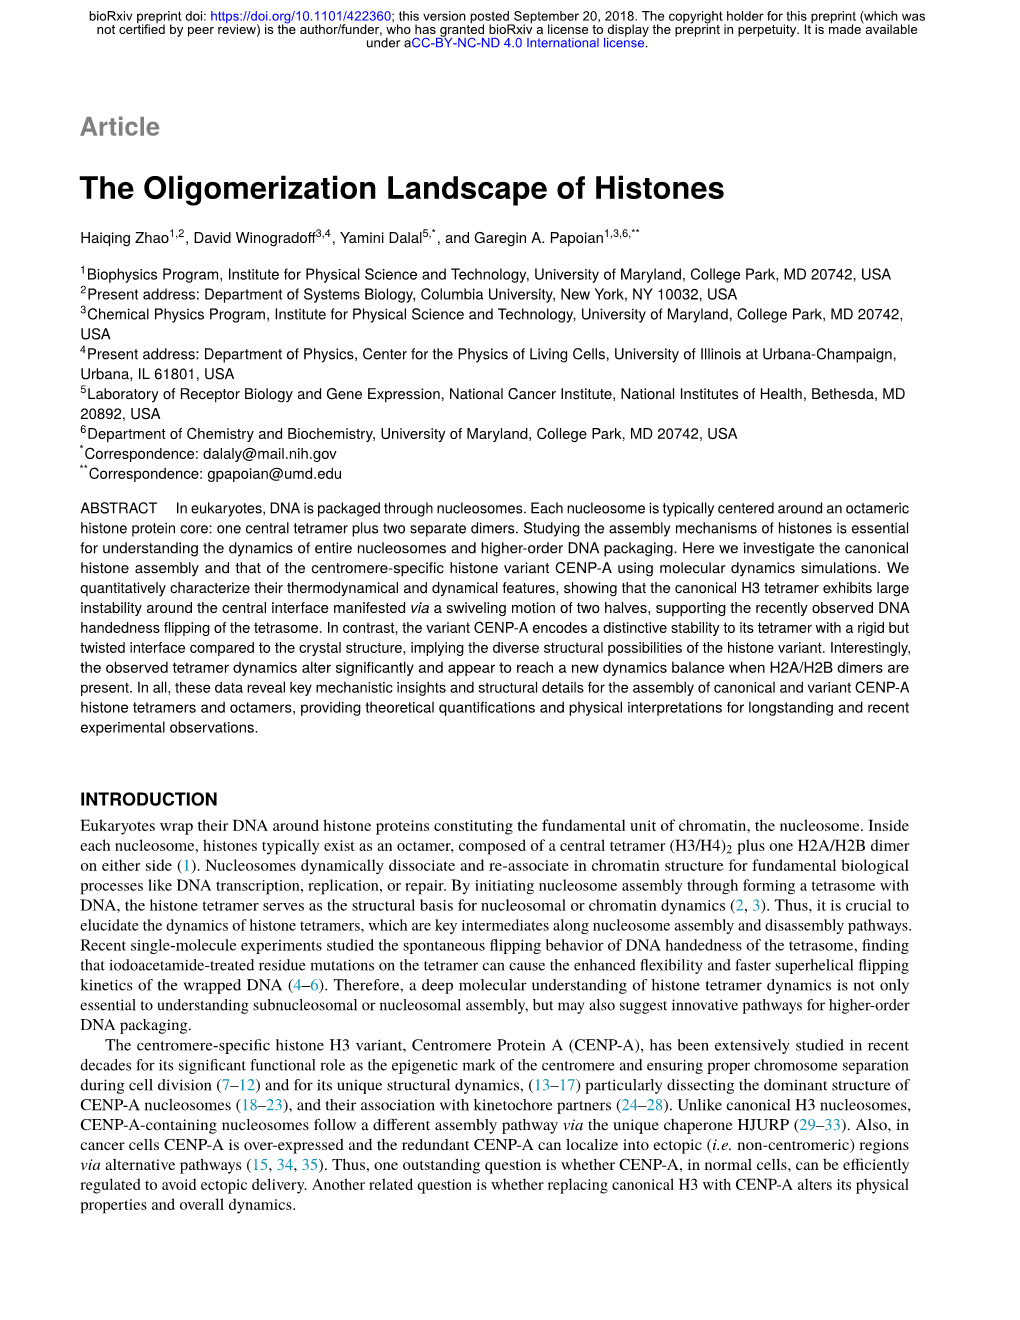 The Oligomerization Landscape of Histones